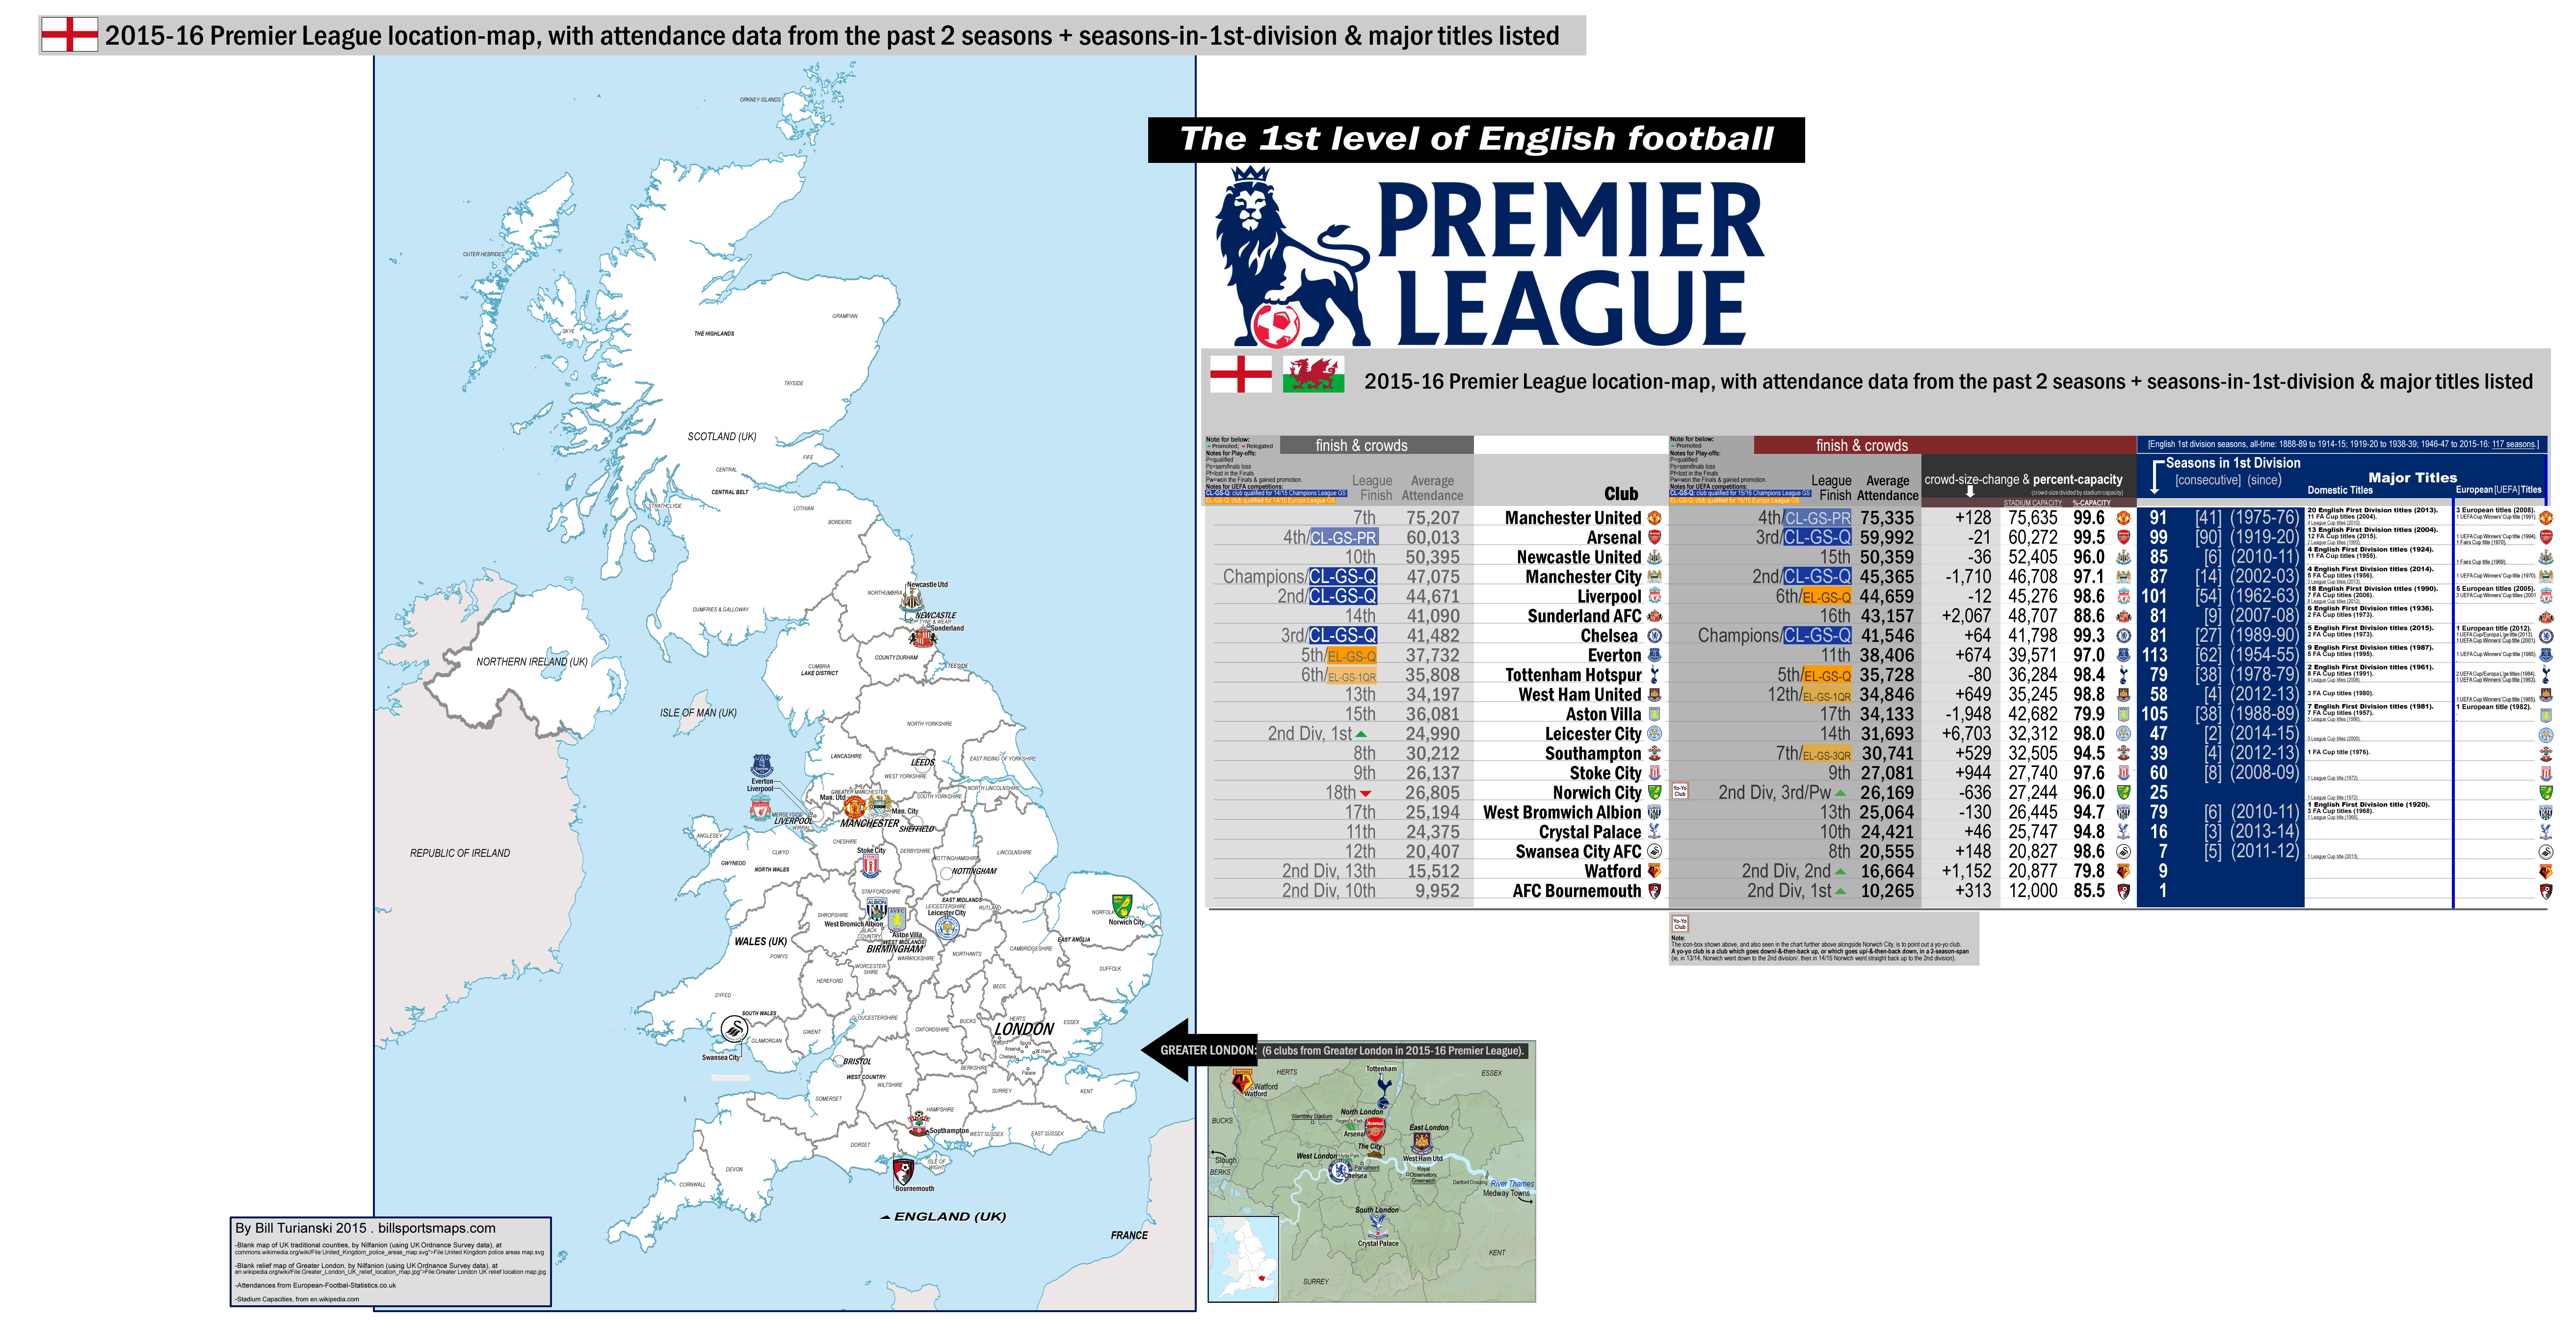 England: Premier League [1st division], 2015-16 location-map with: 14/15 attendances ...5250 x 2690